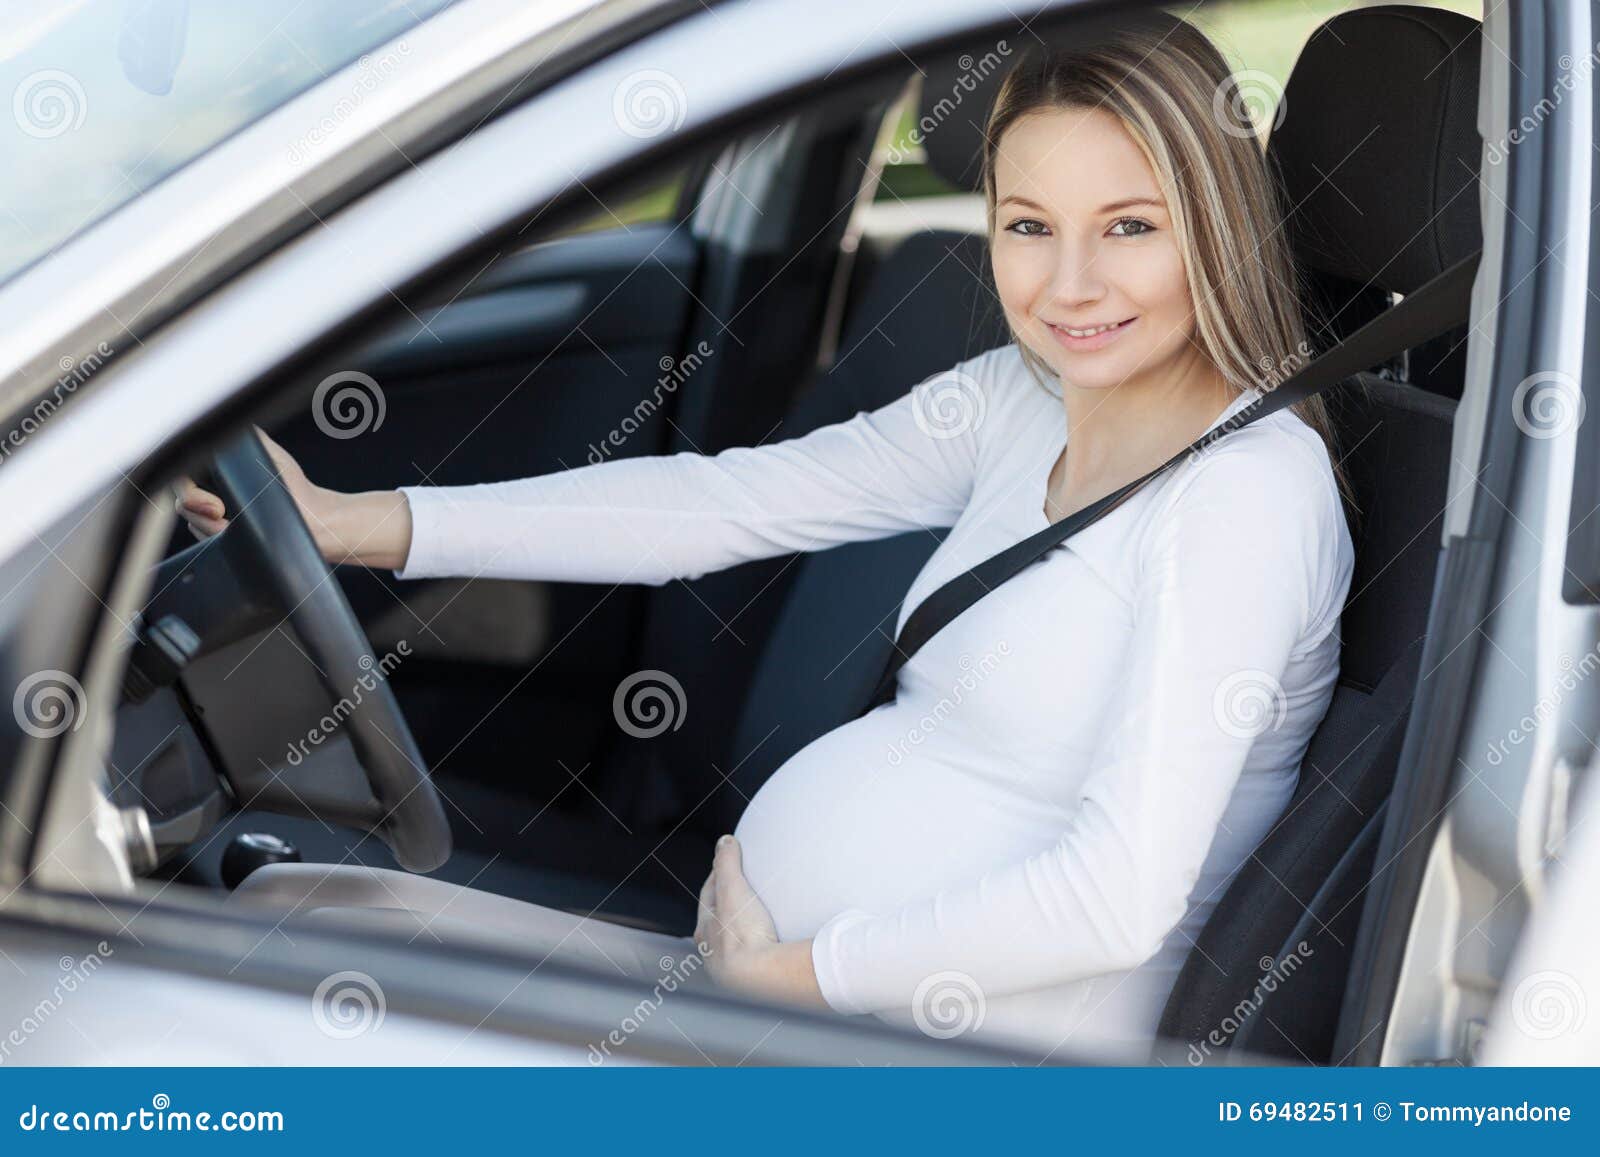 Schwangere Frau Sitzt In Einem Auto Stockfoto und mehr Bilder von